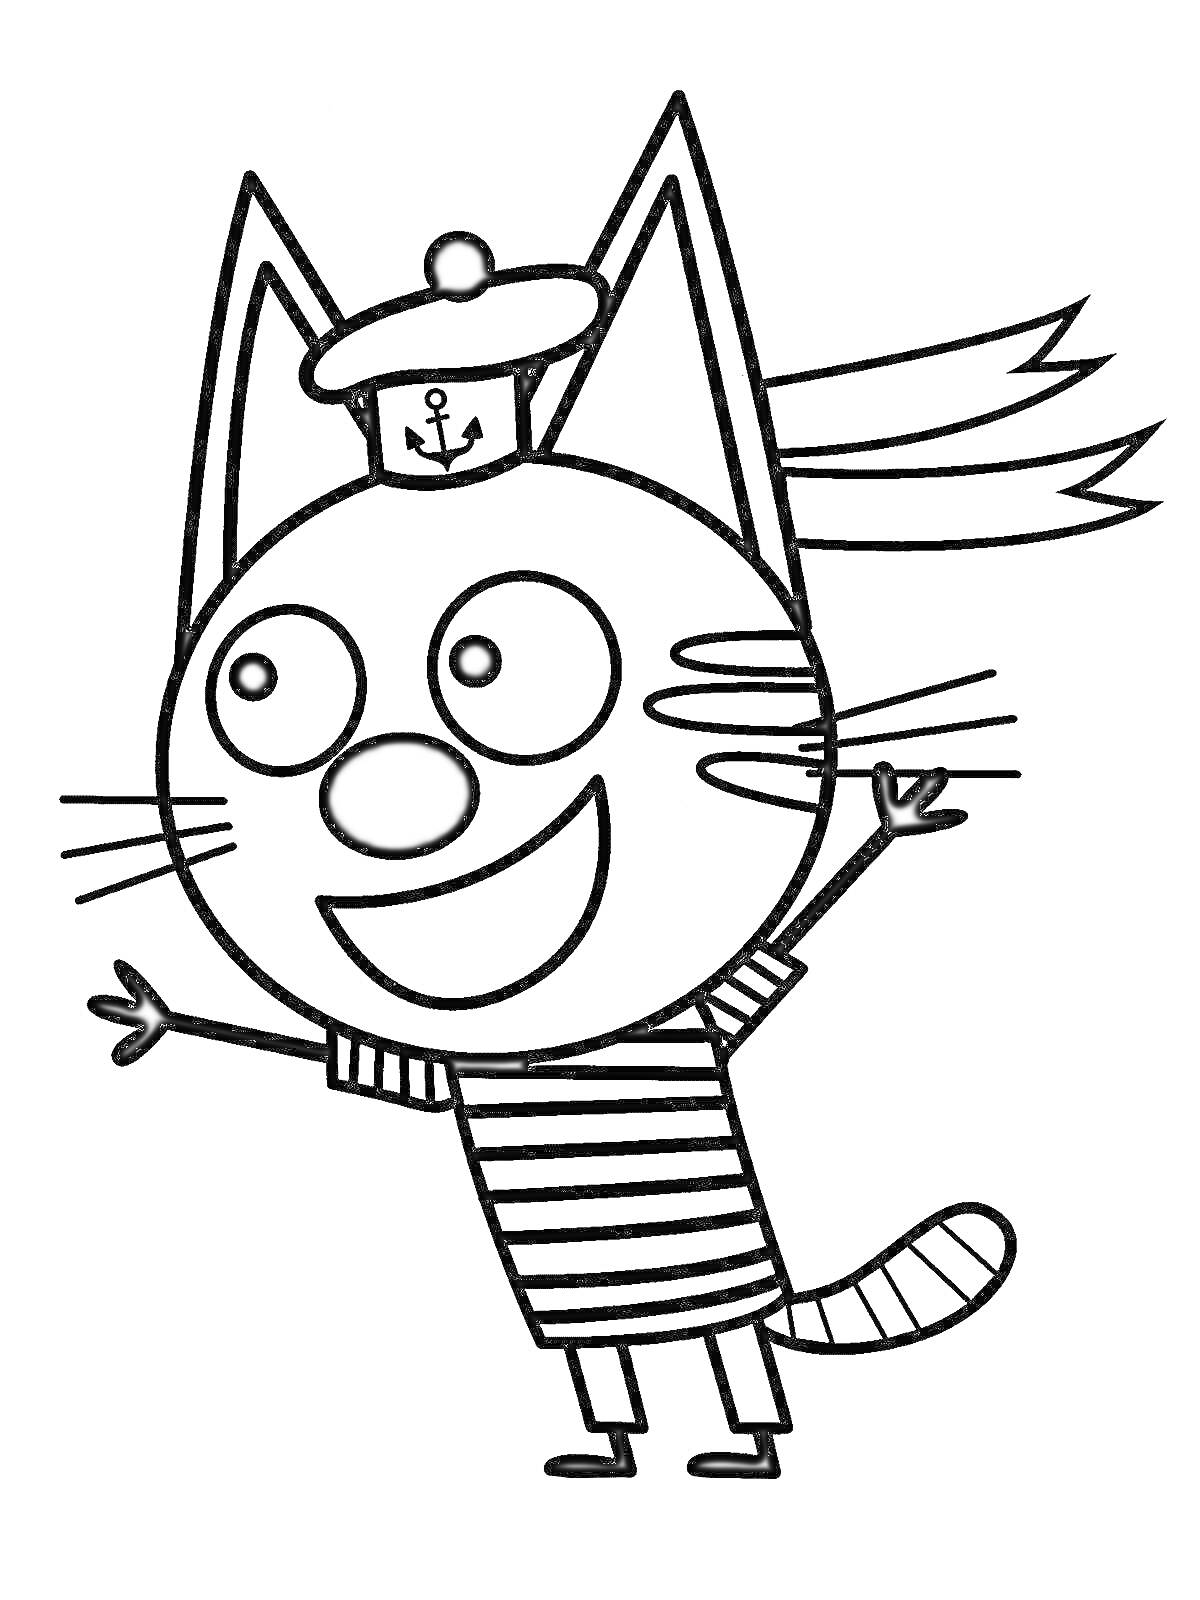 Кот в матросской форме с фуражкой и поднятыми лапами